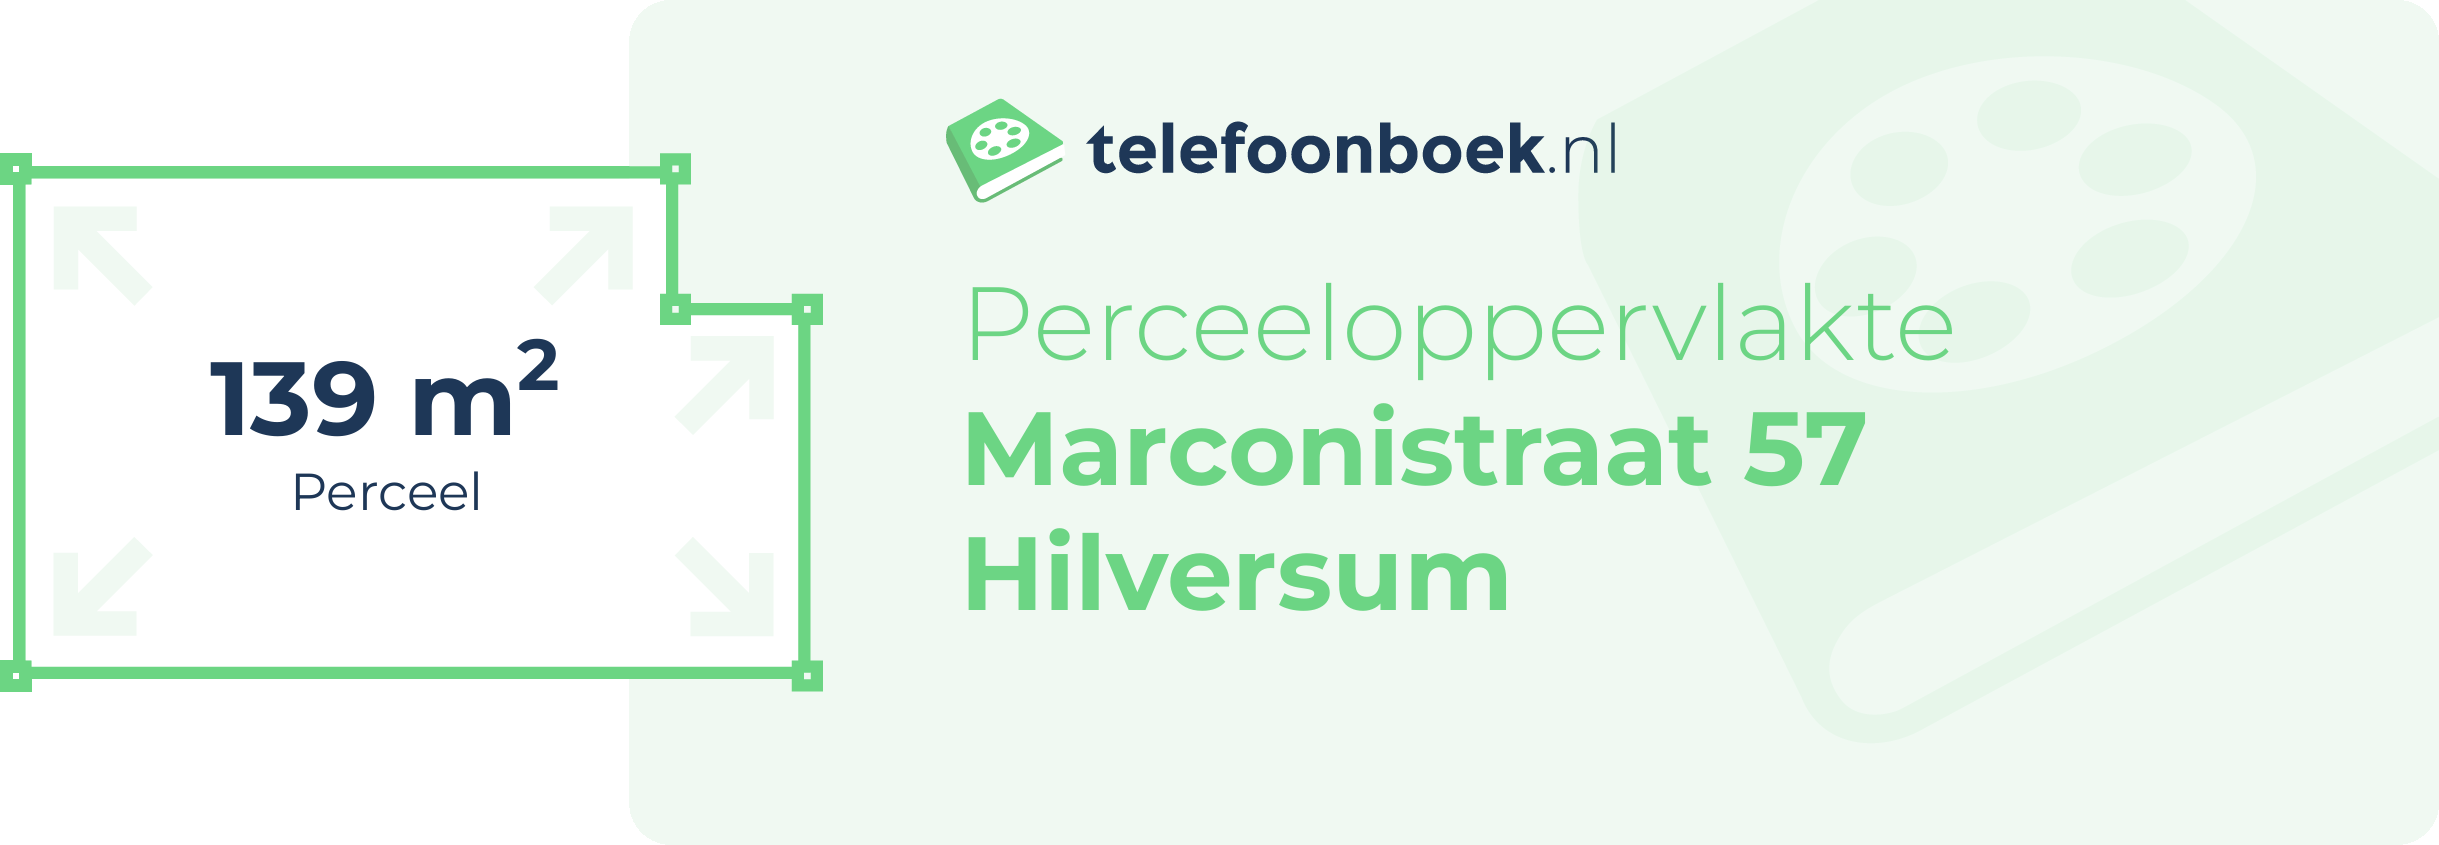 Perceeloppervlakte Marconistraat 57 Hilversum